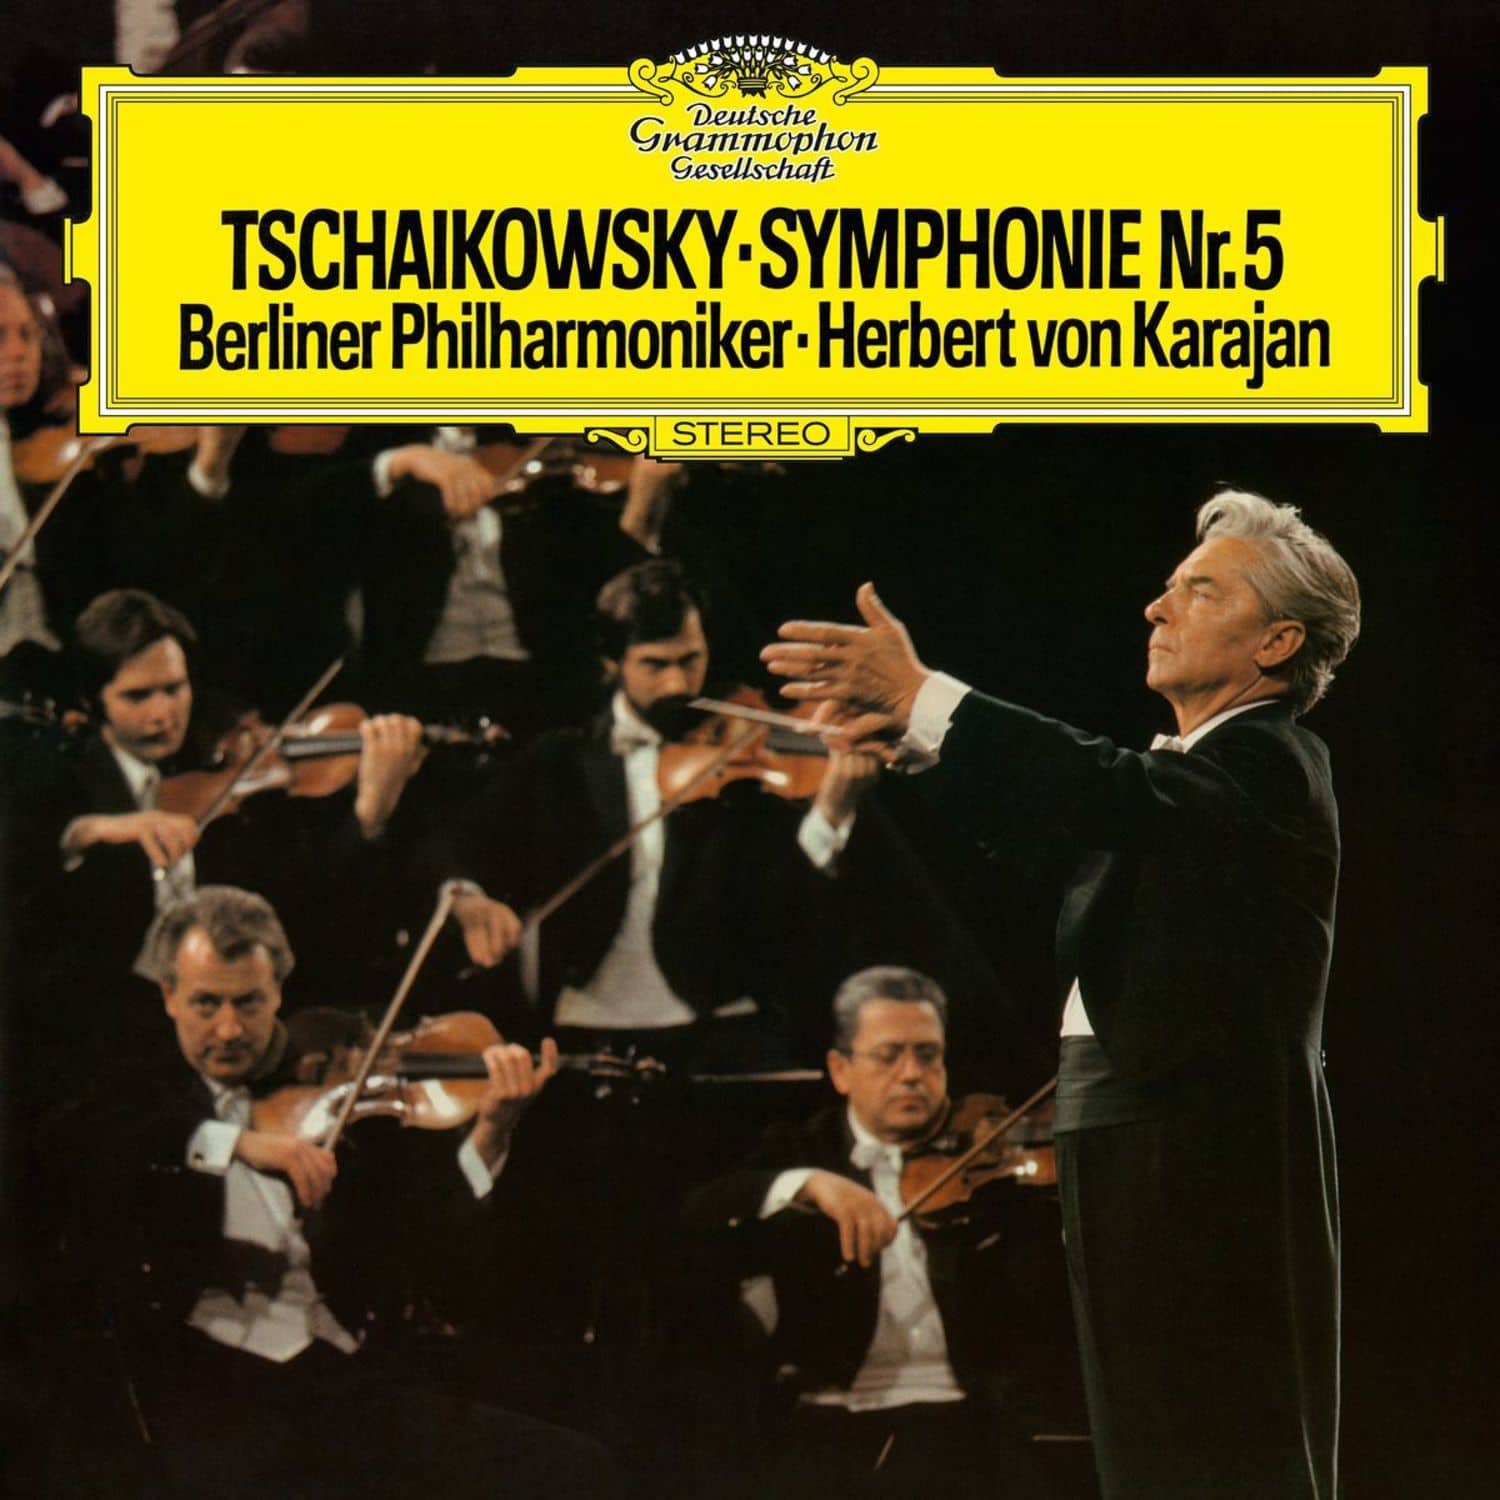 Herbert von/BP Karajan / Peter Iljitsch Tschaikowsky - SINFONIE 5 